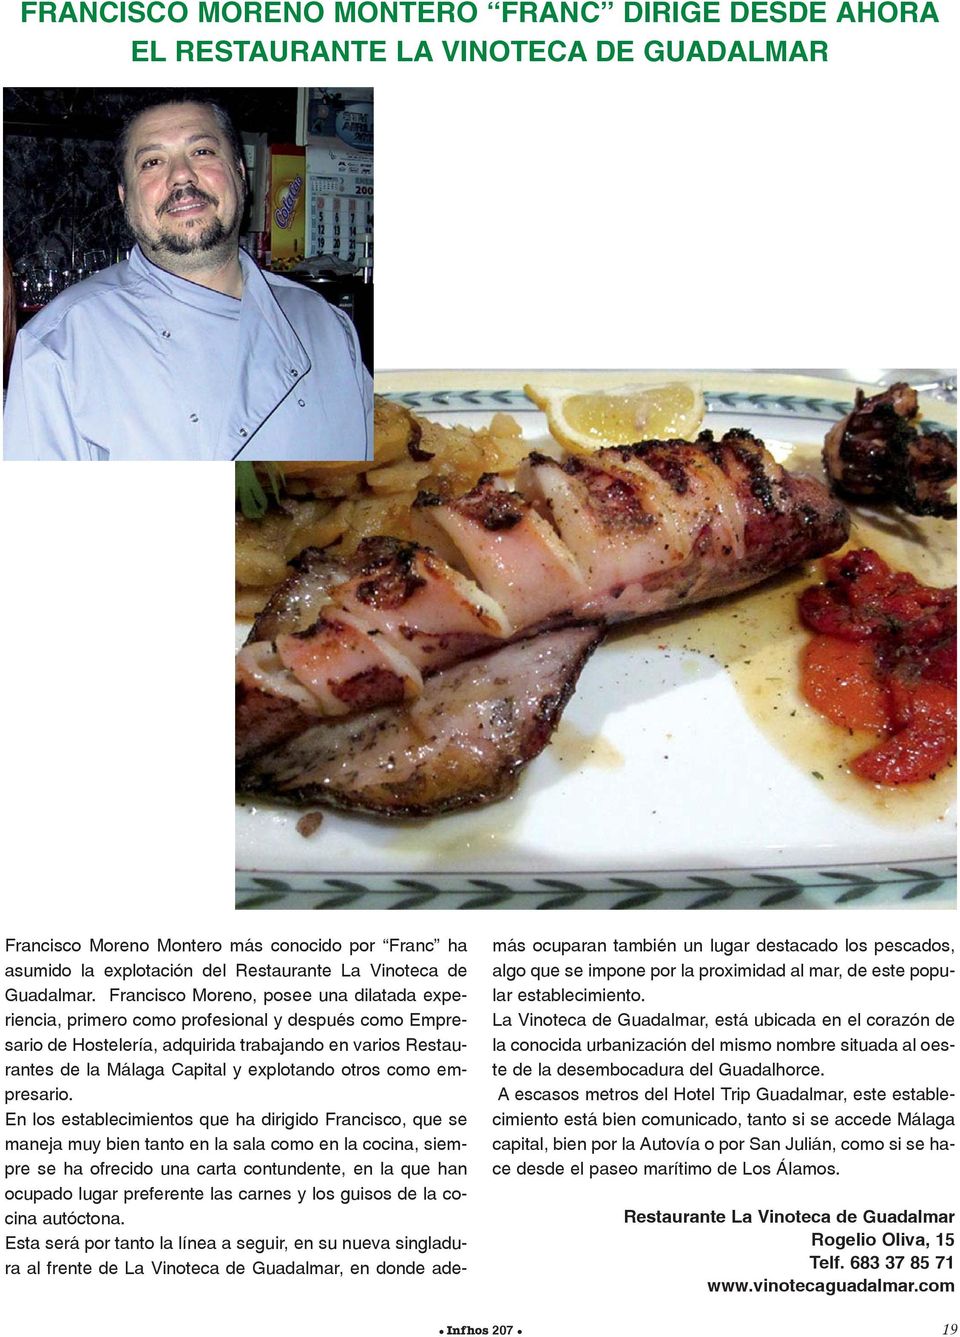 Francisco Moreno, posee una dilatada experiencia, primero como profesional y después como Empresario de Hostelería, adquirida trabajando en varios Restaurantes de la Capital y explotando otros como